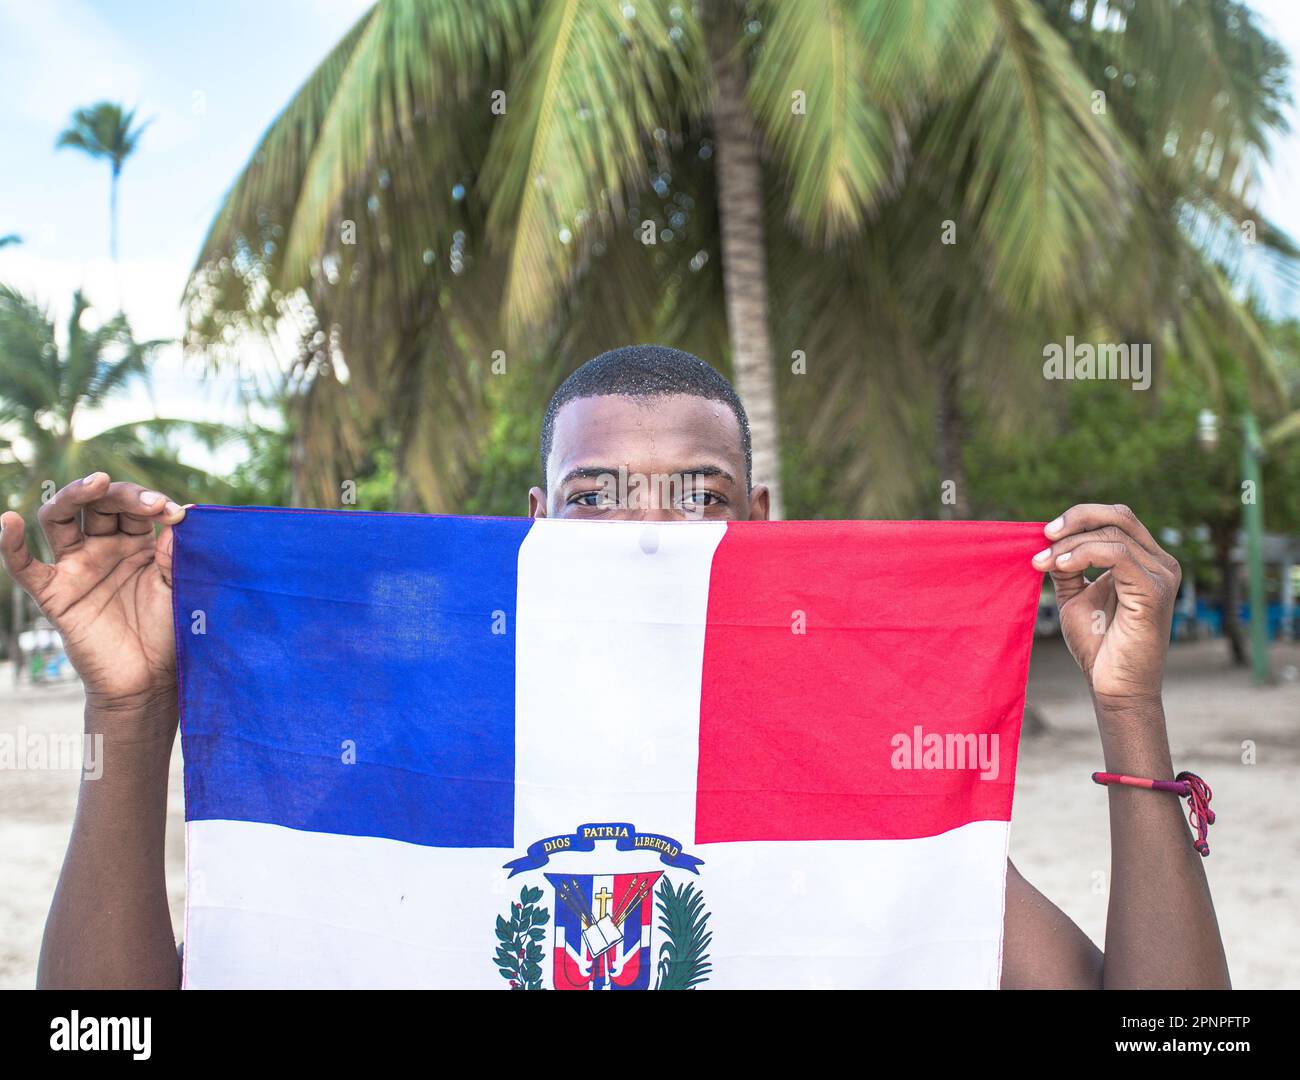 Ein stolzer kleiner schwarzer Junge zeigt die dominikanische Flagge am Strand, seine wunderschönen schwarzen Augen leuchten, während üppig grüne Palmen den Hintergrund schmücken Stockfoto